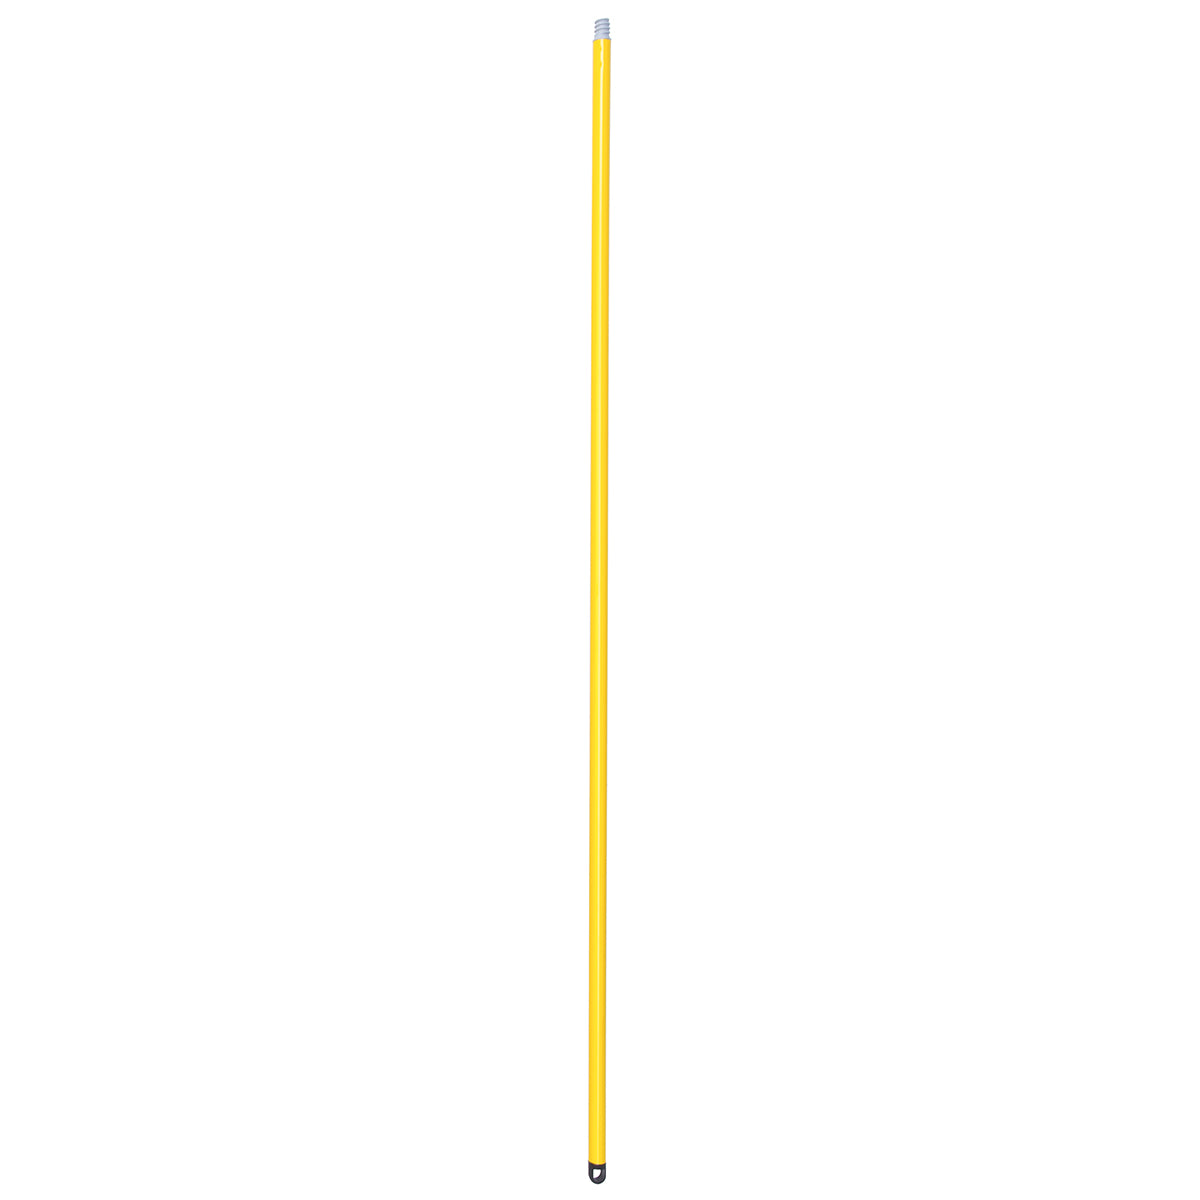 Baston de Lamina Reforzada 1.37 mts de Largo Color Amarillo